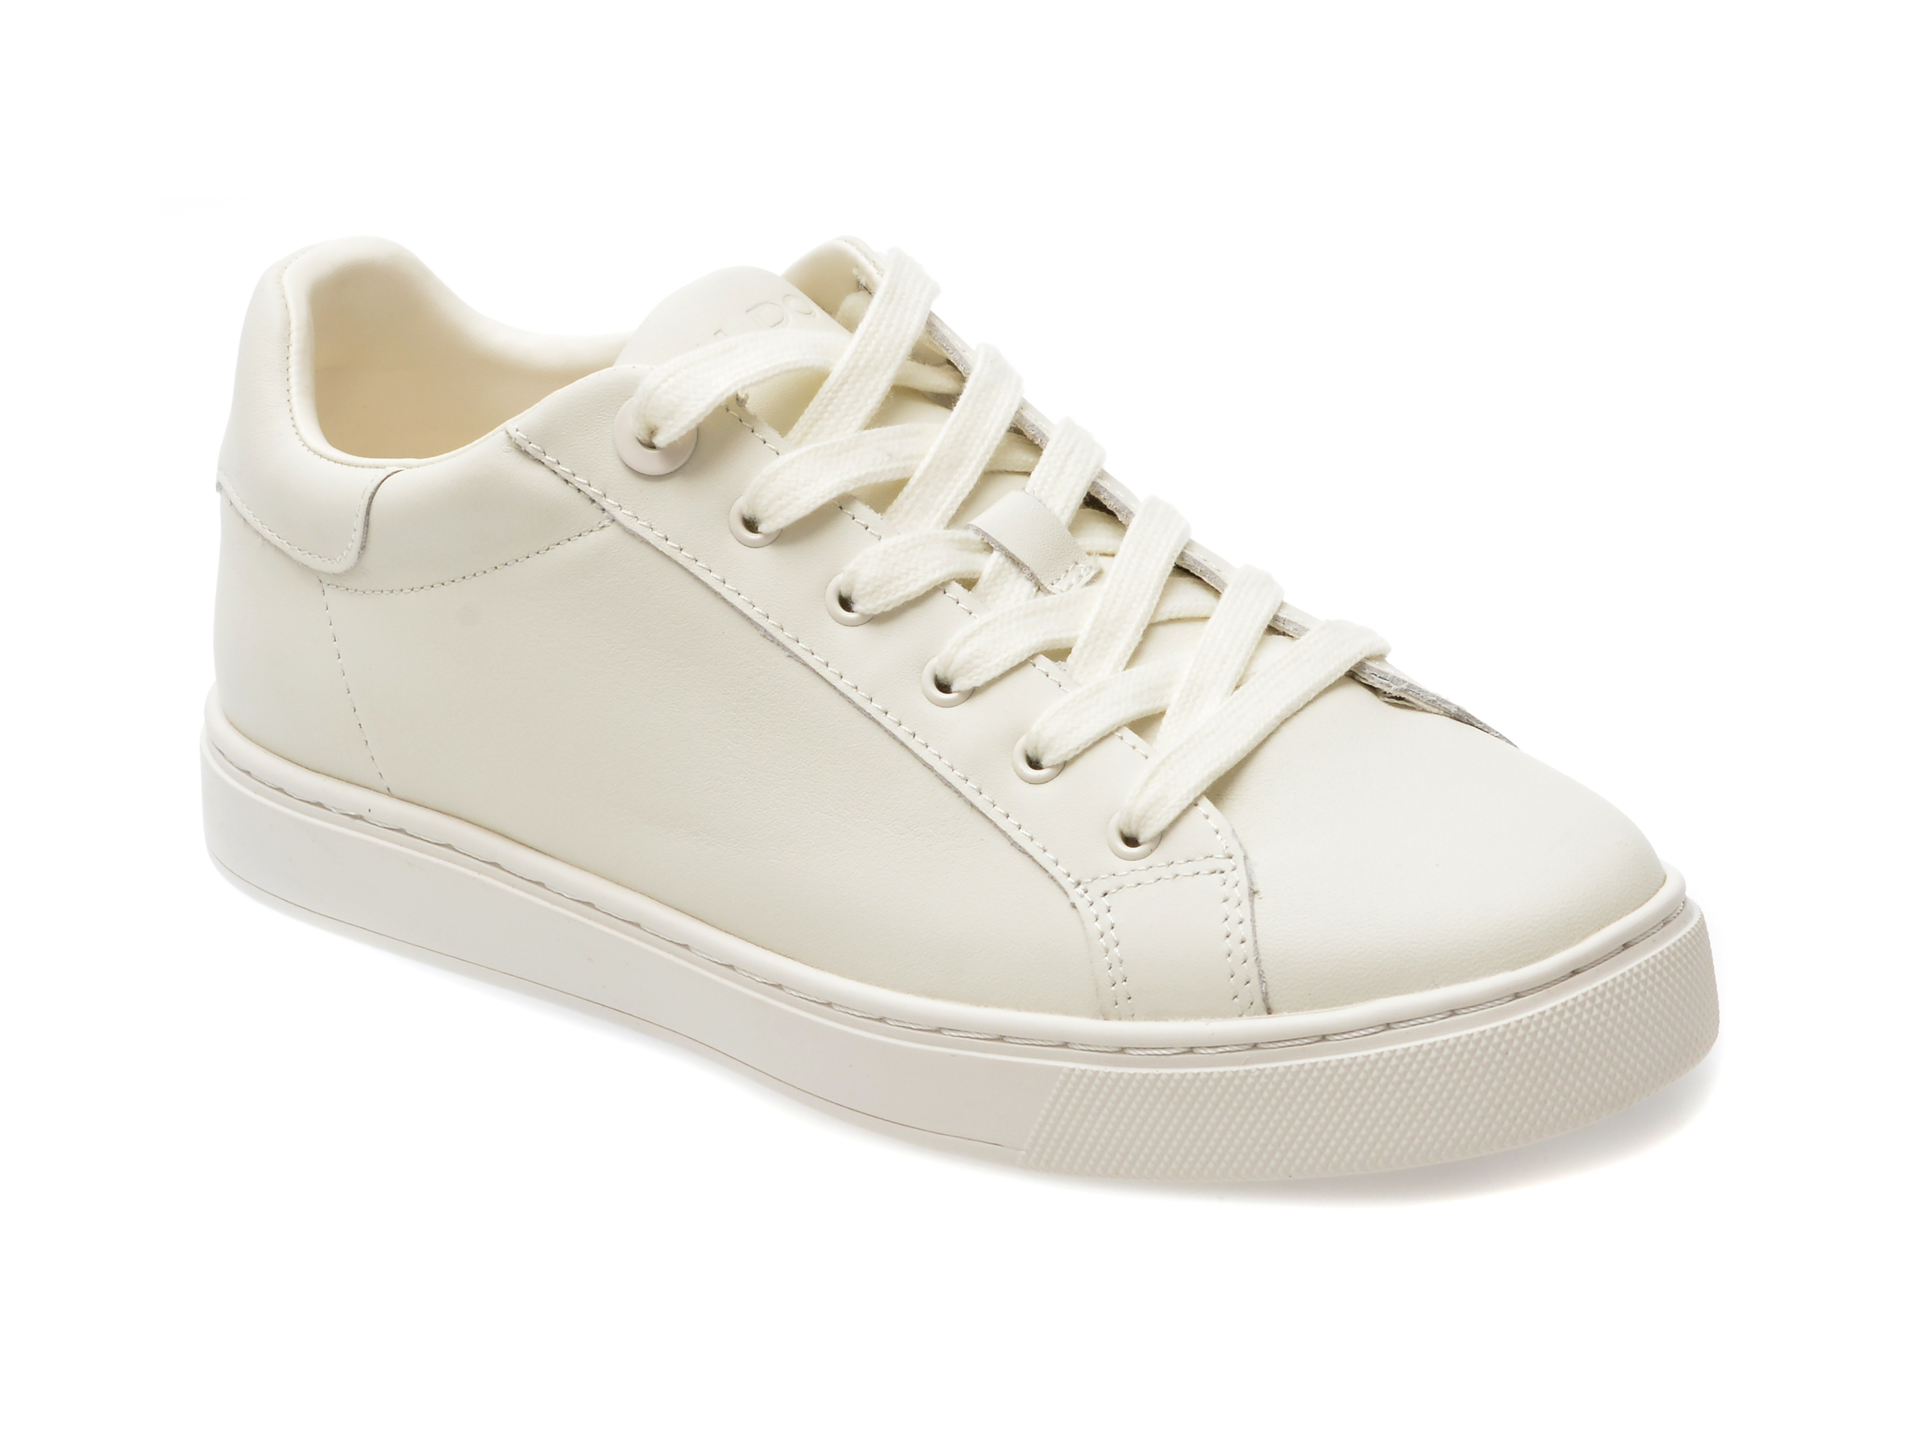 Pantofi casual ALDO albi, 13542969, din piele naturala